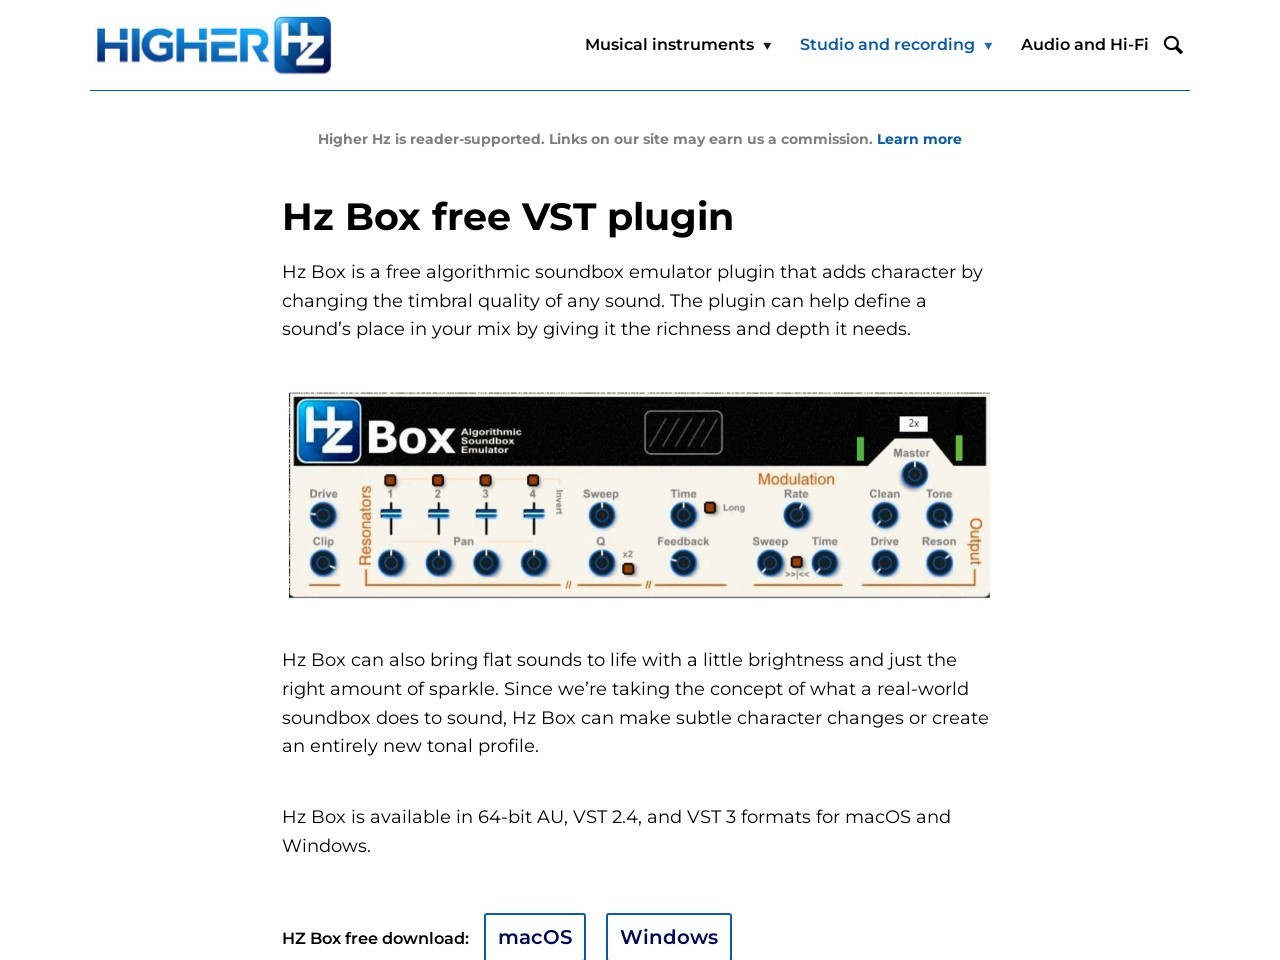 Hz Box free VST plugin by Higher Hz